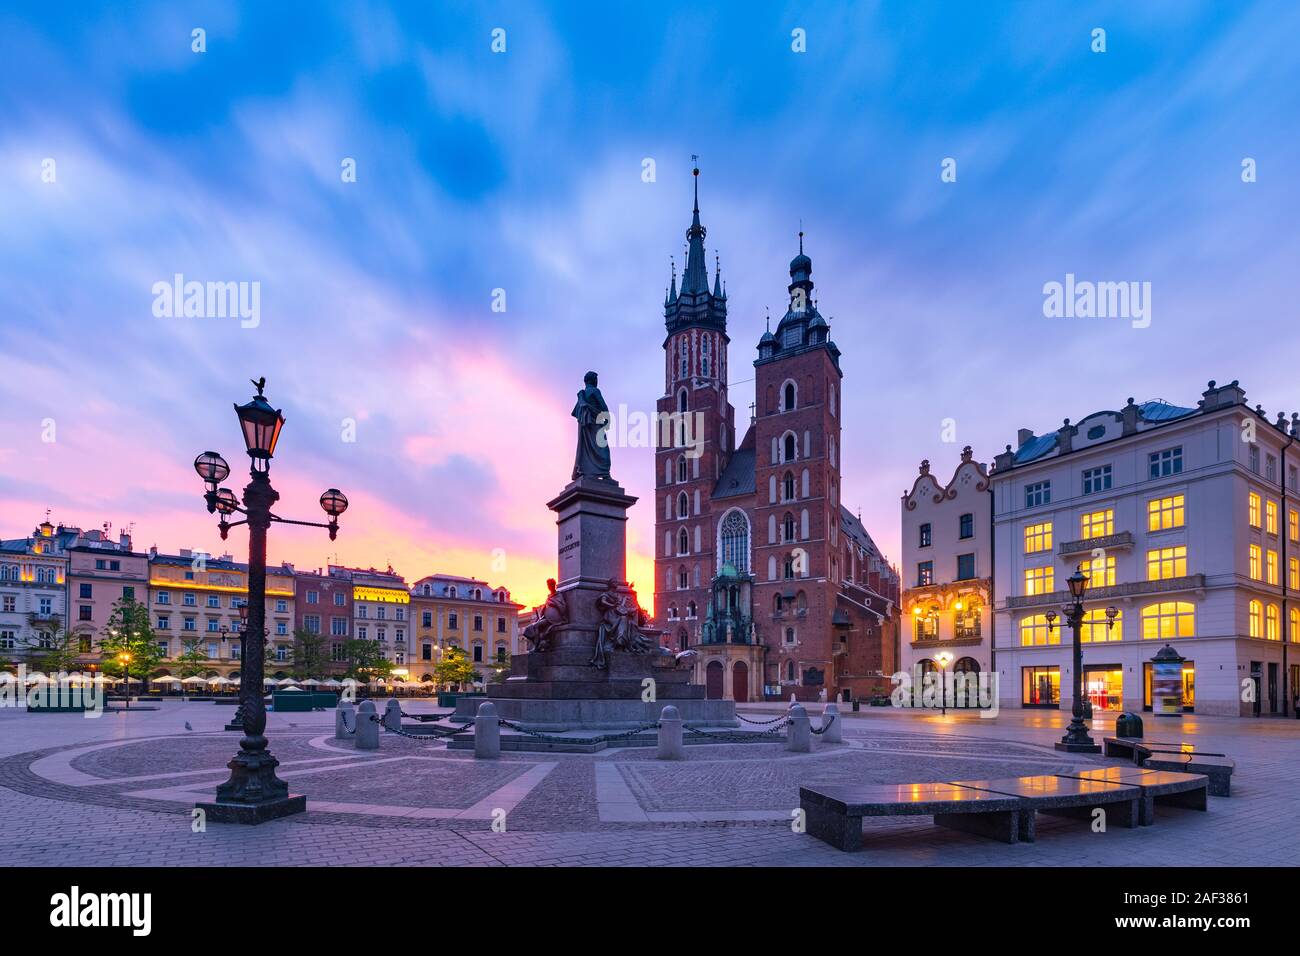 Plaza del Mercado Medieval con la Basílica de Santa María en el hermoso amanecer en la vieja ciudad de Krakow, Polonia Foto de stock